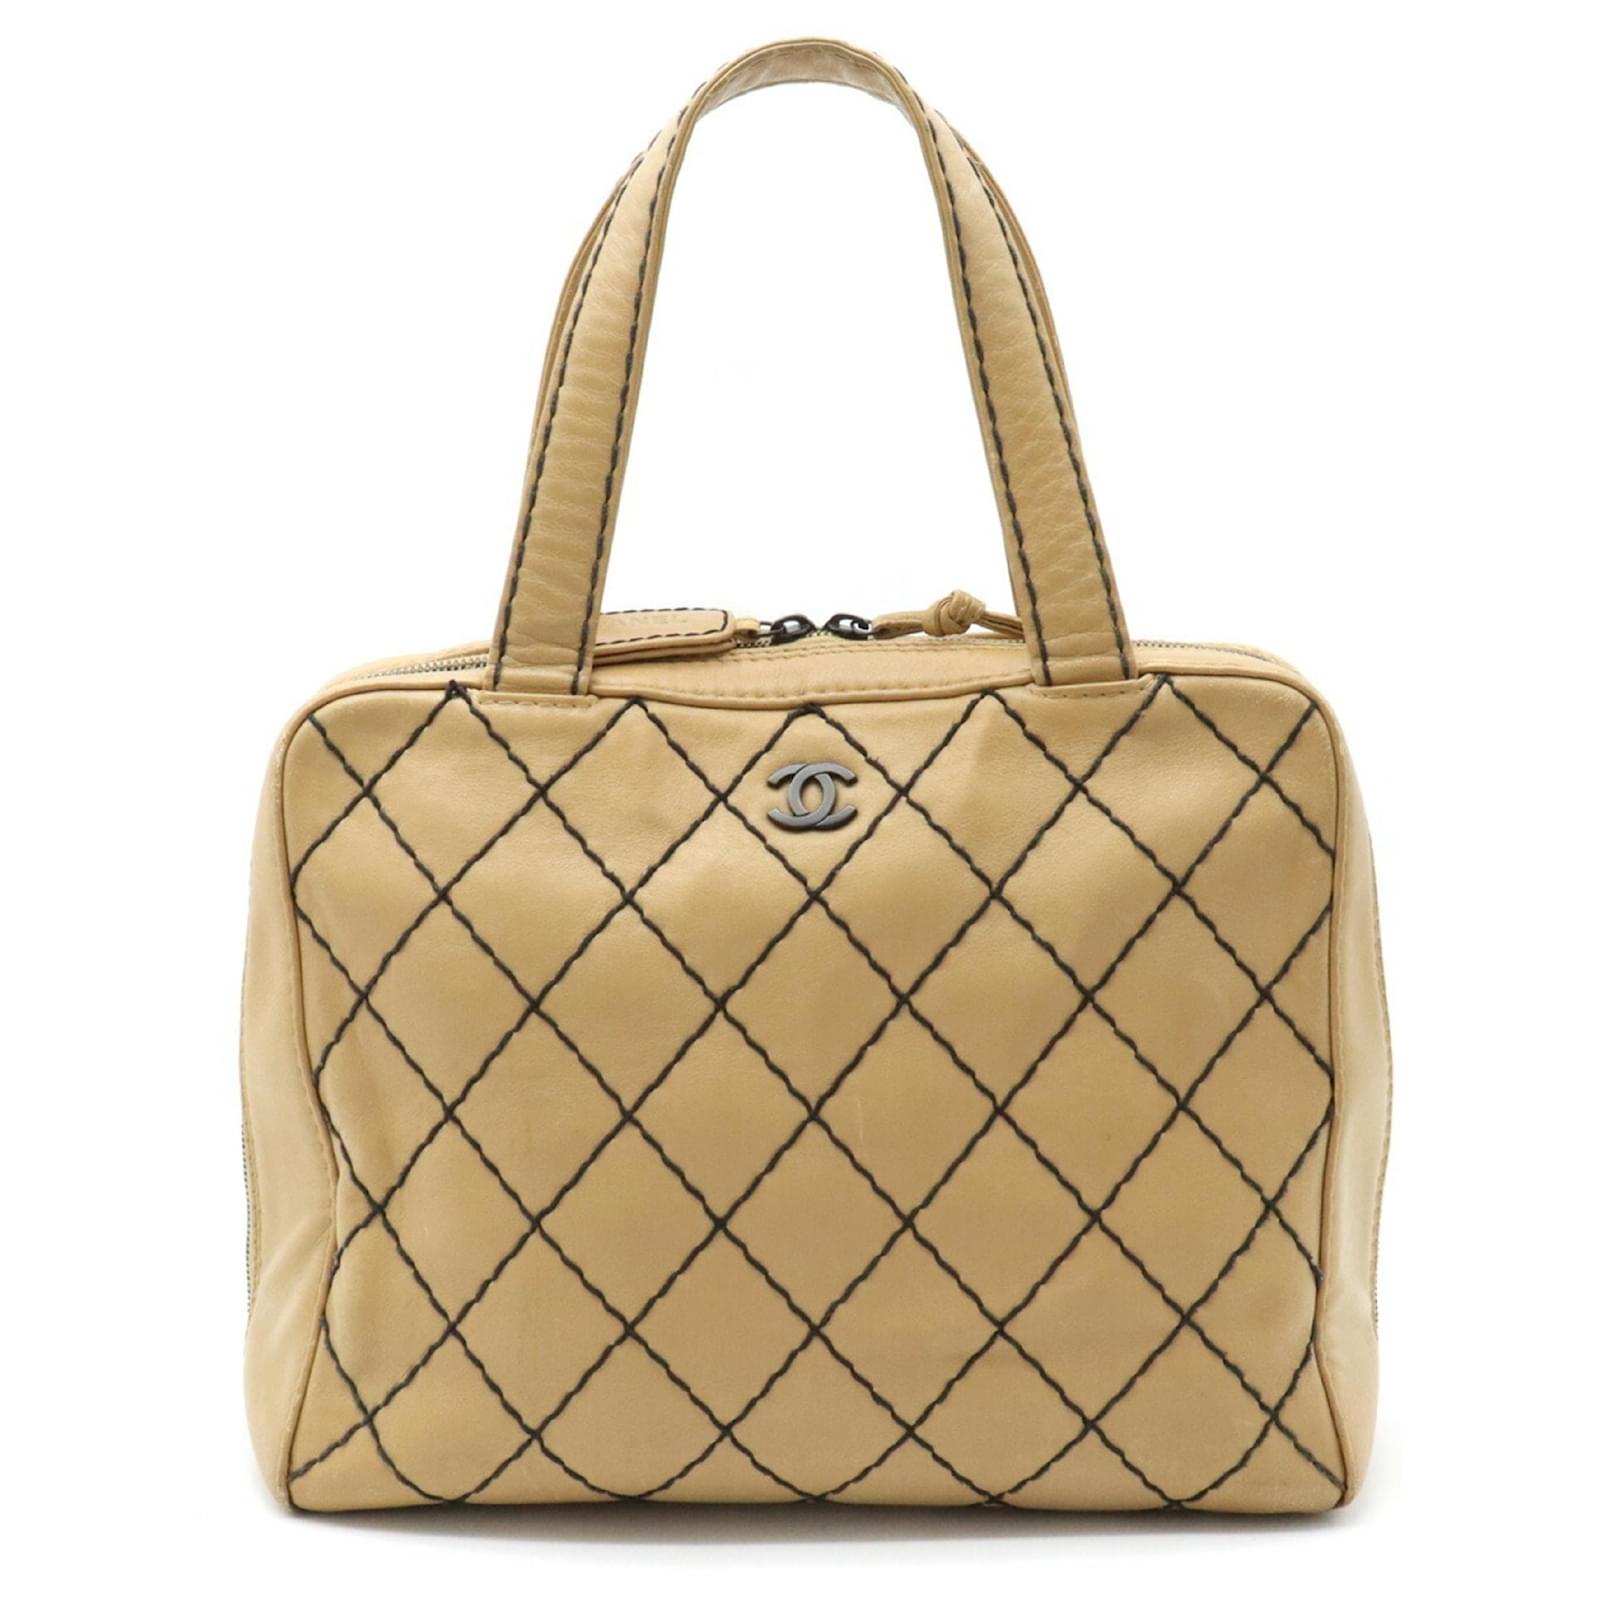 CHANEL Wild Stitch Handbag Boston Bag Leather Beige A14692